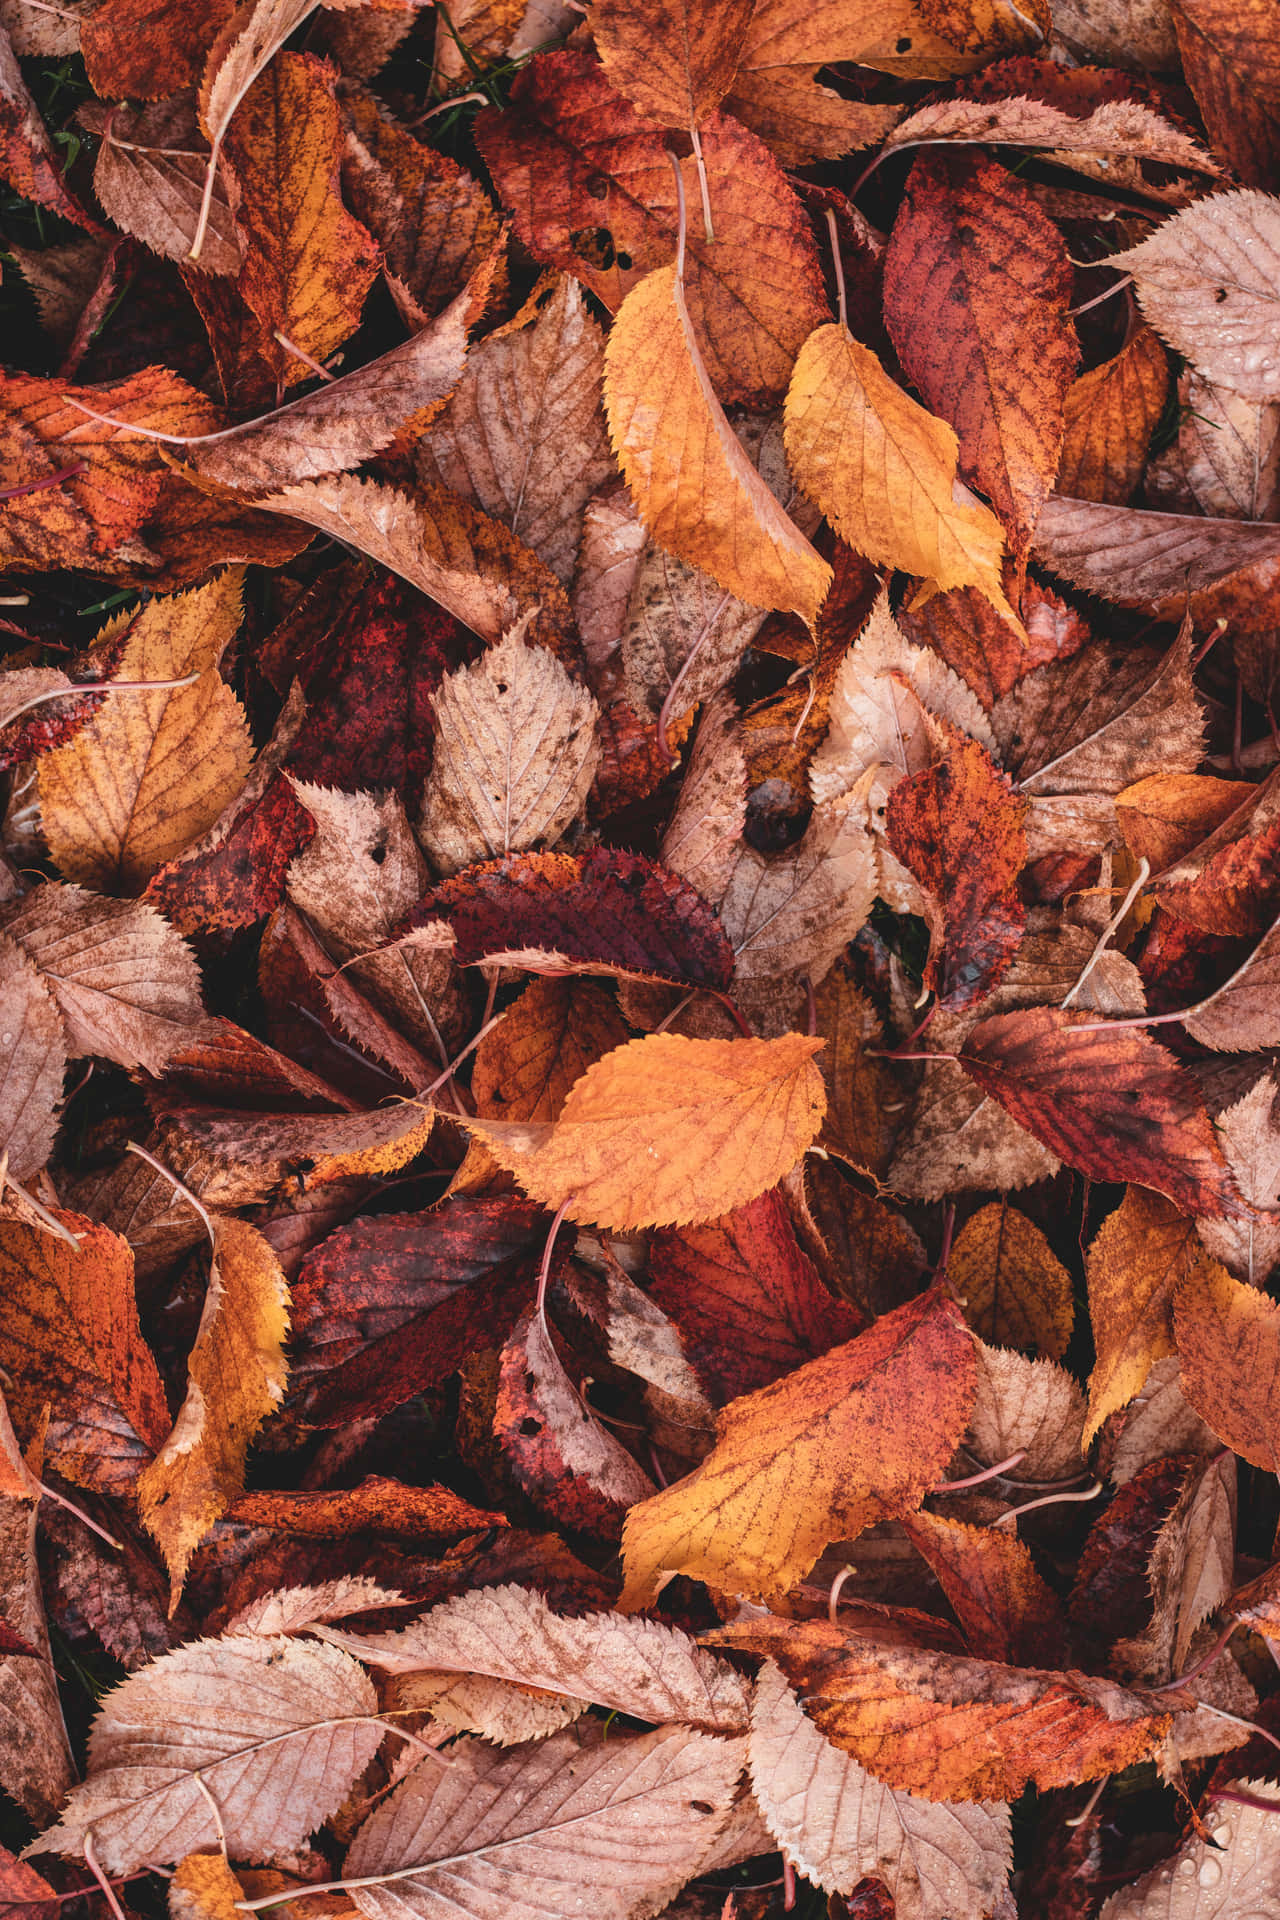 Bildhär Visas Höstens Skönhet Fullt Ut I Denna Fantastiska Bild Av Lövverk Under Hösten. Wallpaper